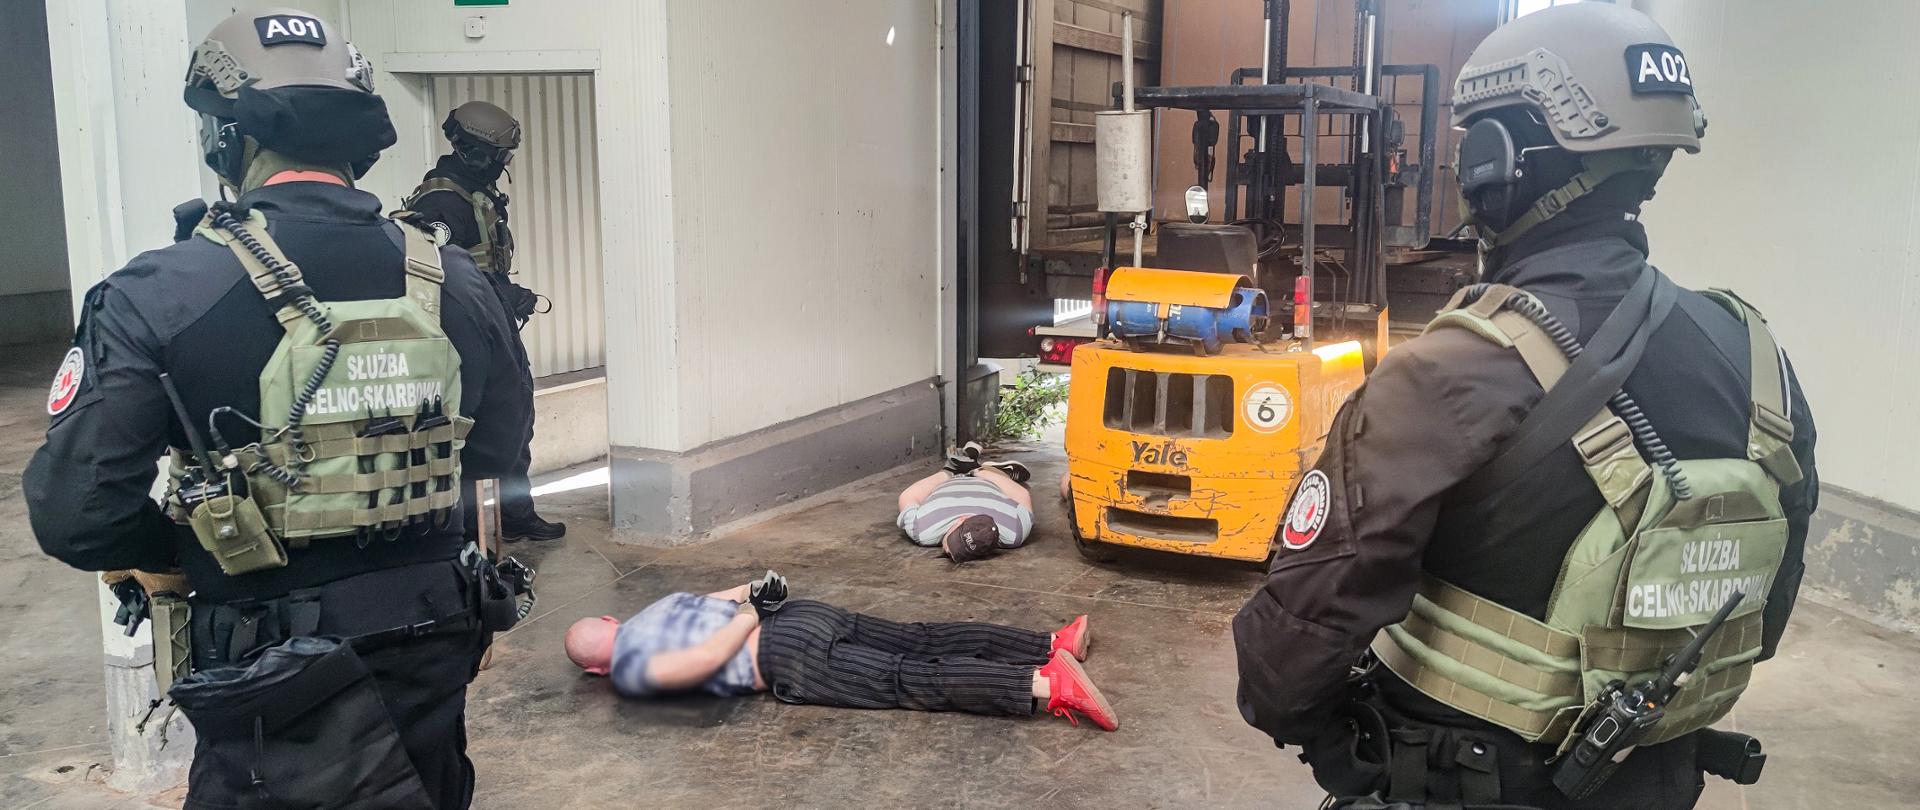 Zdjęcie przedstawia dwóch leżących na ziemi mężczyzn zatrzymanych przez funkcjonariuszy służby celno-skarbowej.